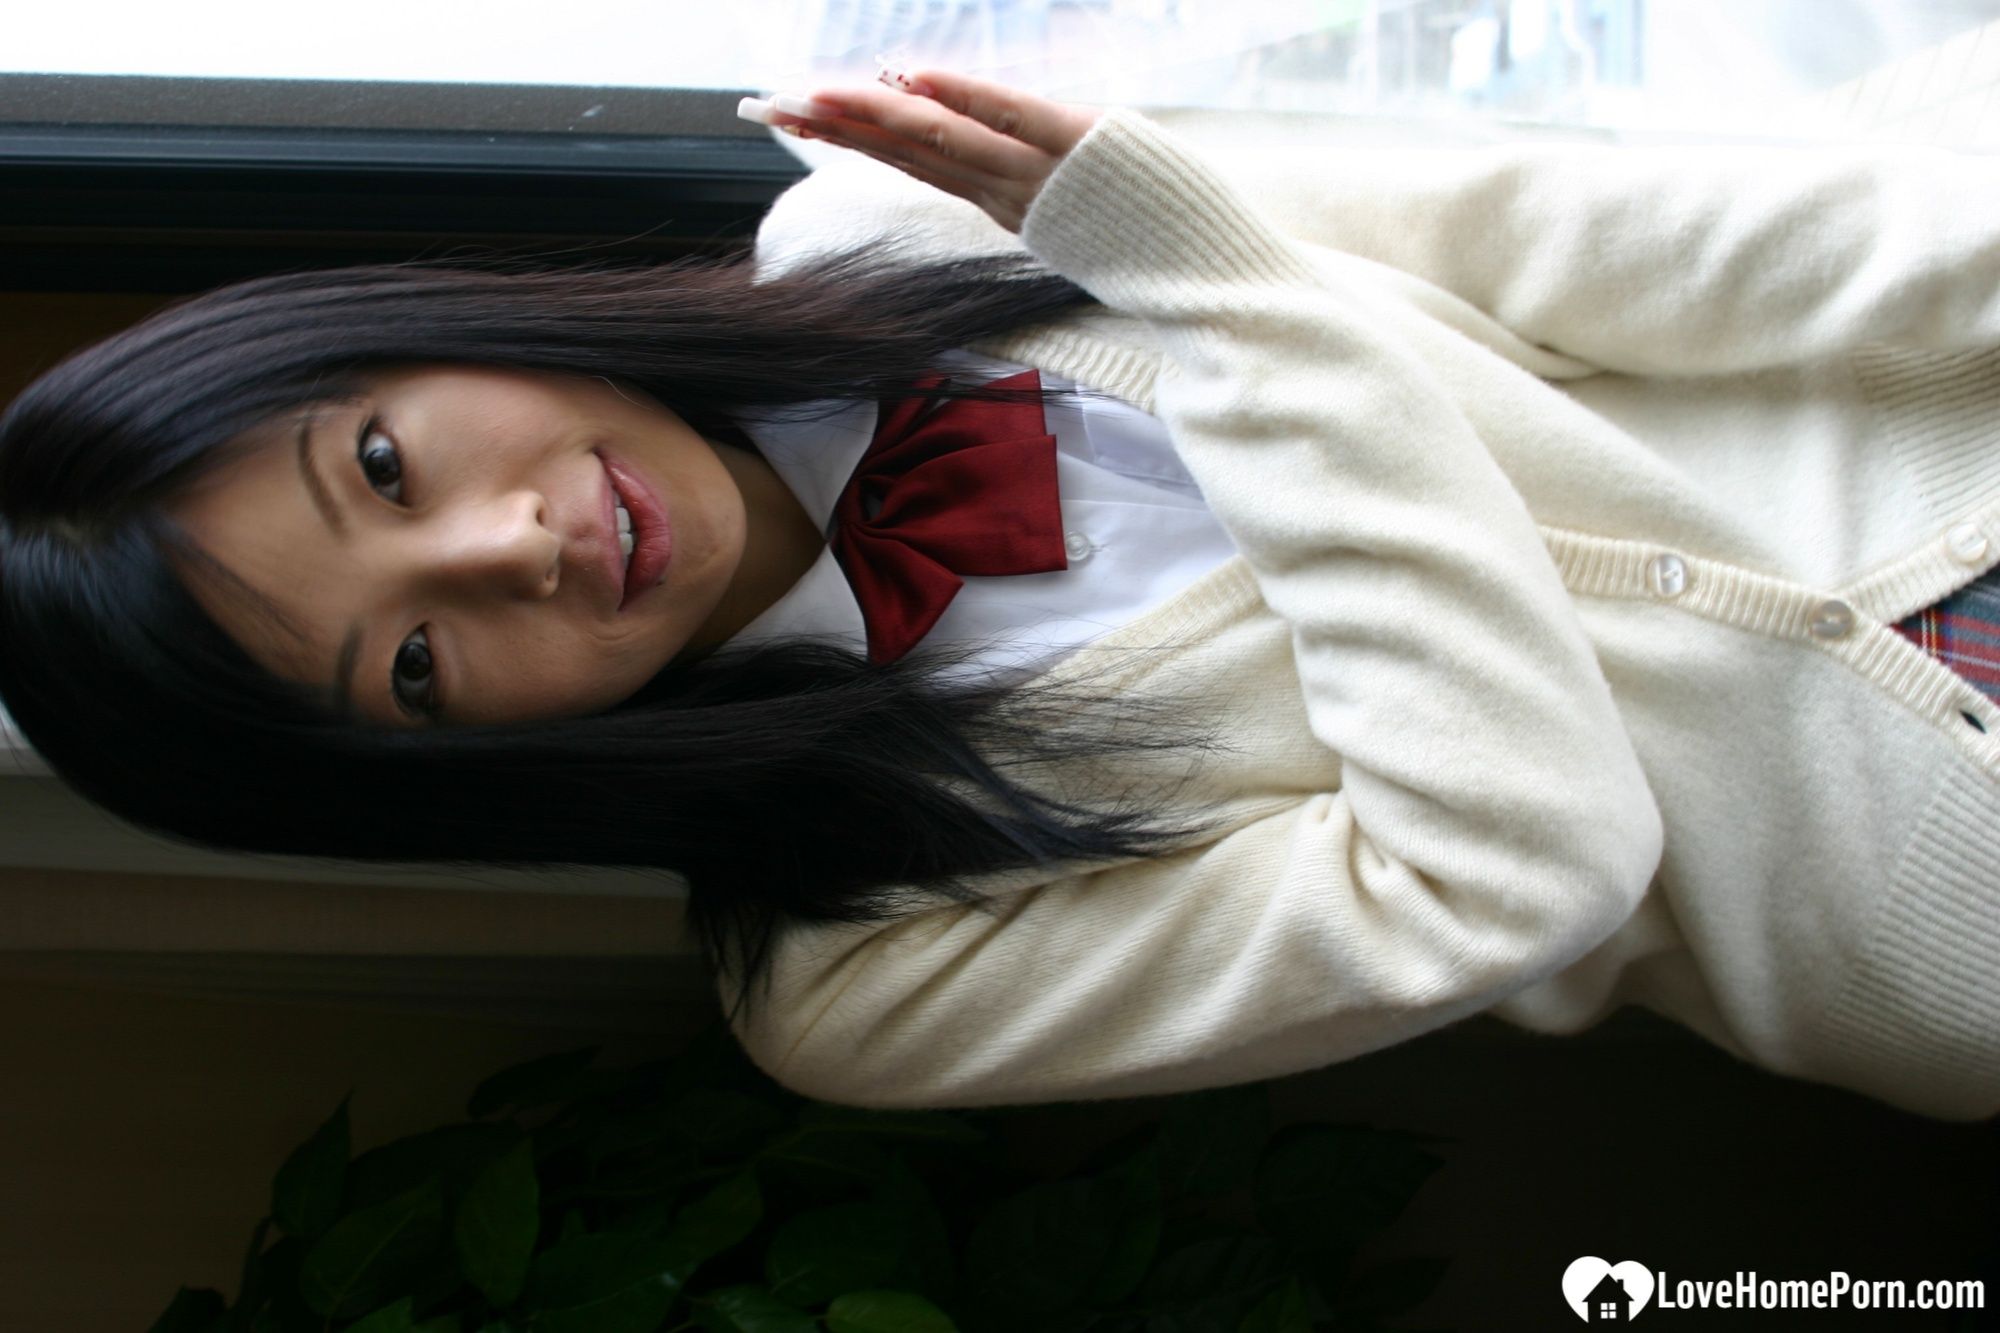 Asian schoolgirl looks for some online exposure #52